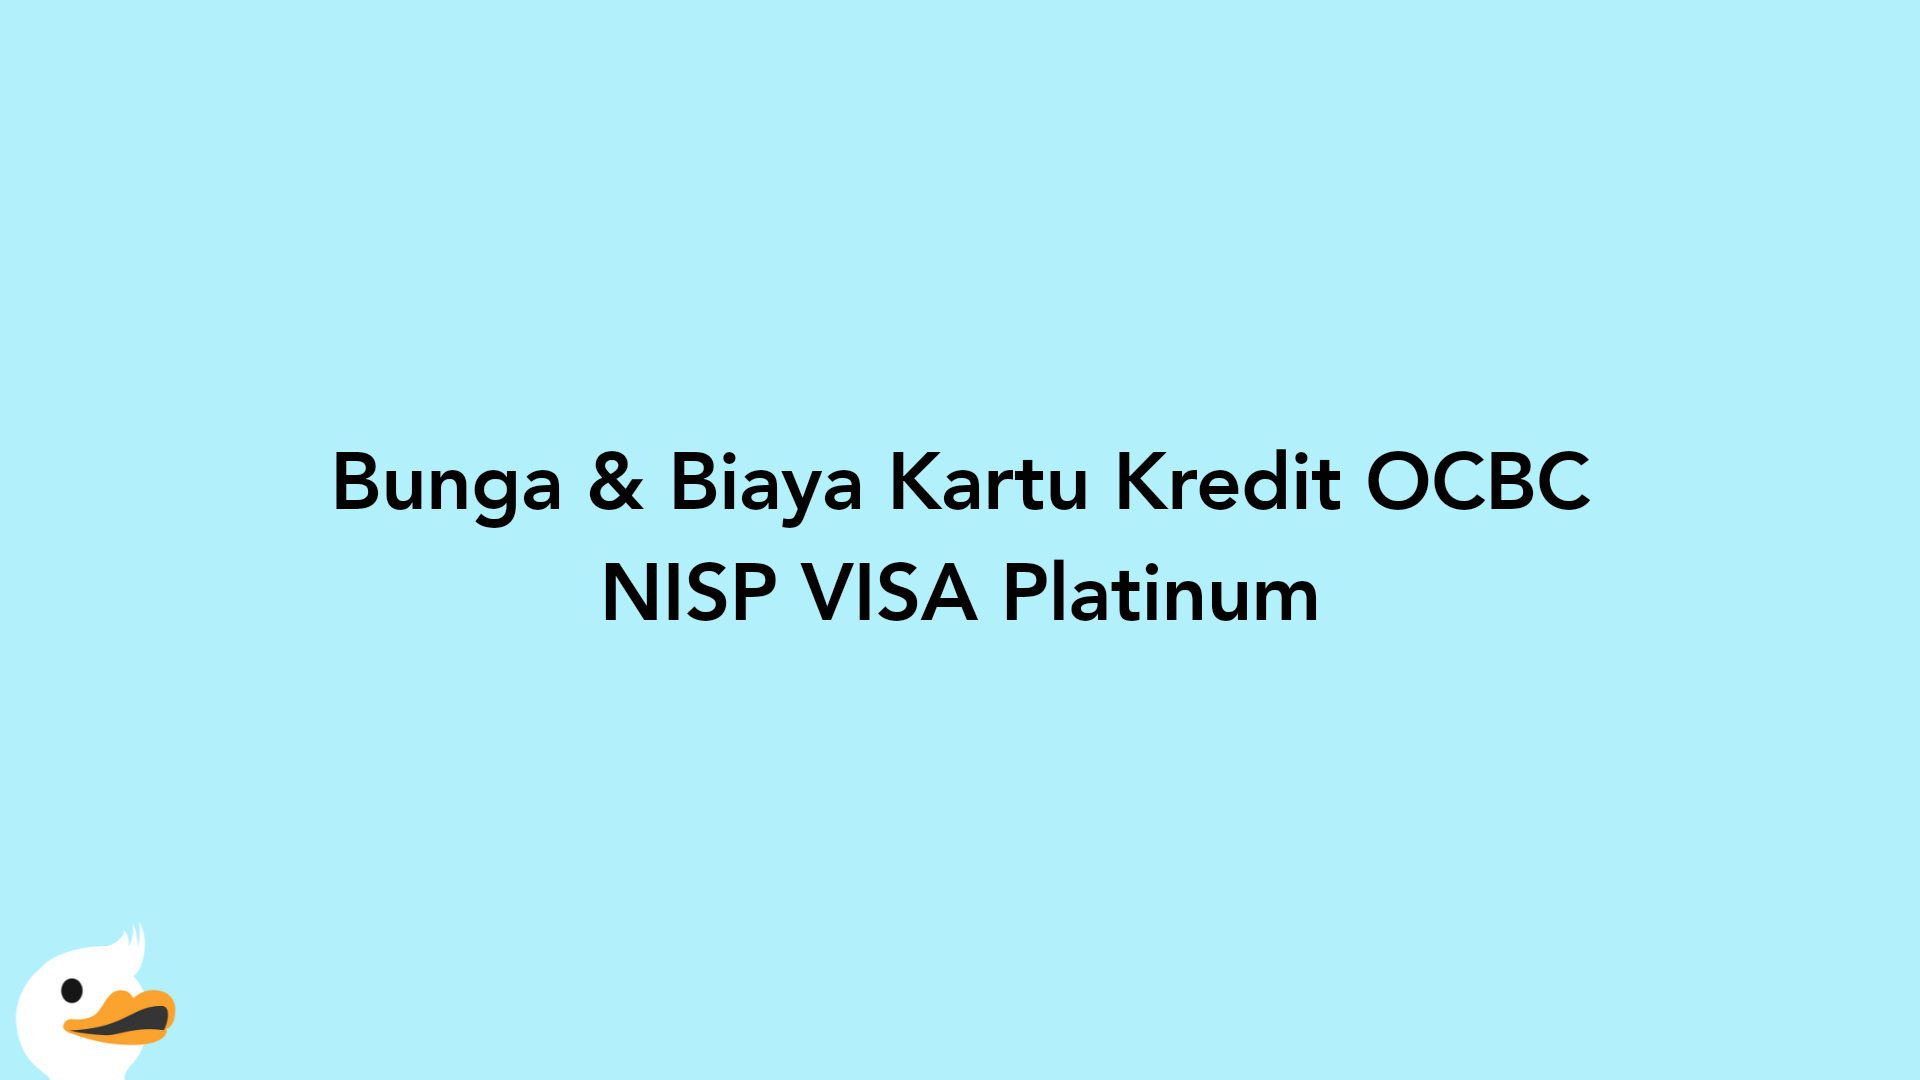 Bunga & Biaya Kartu Kredit OCBC NISP VISA Platinum